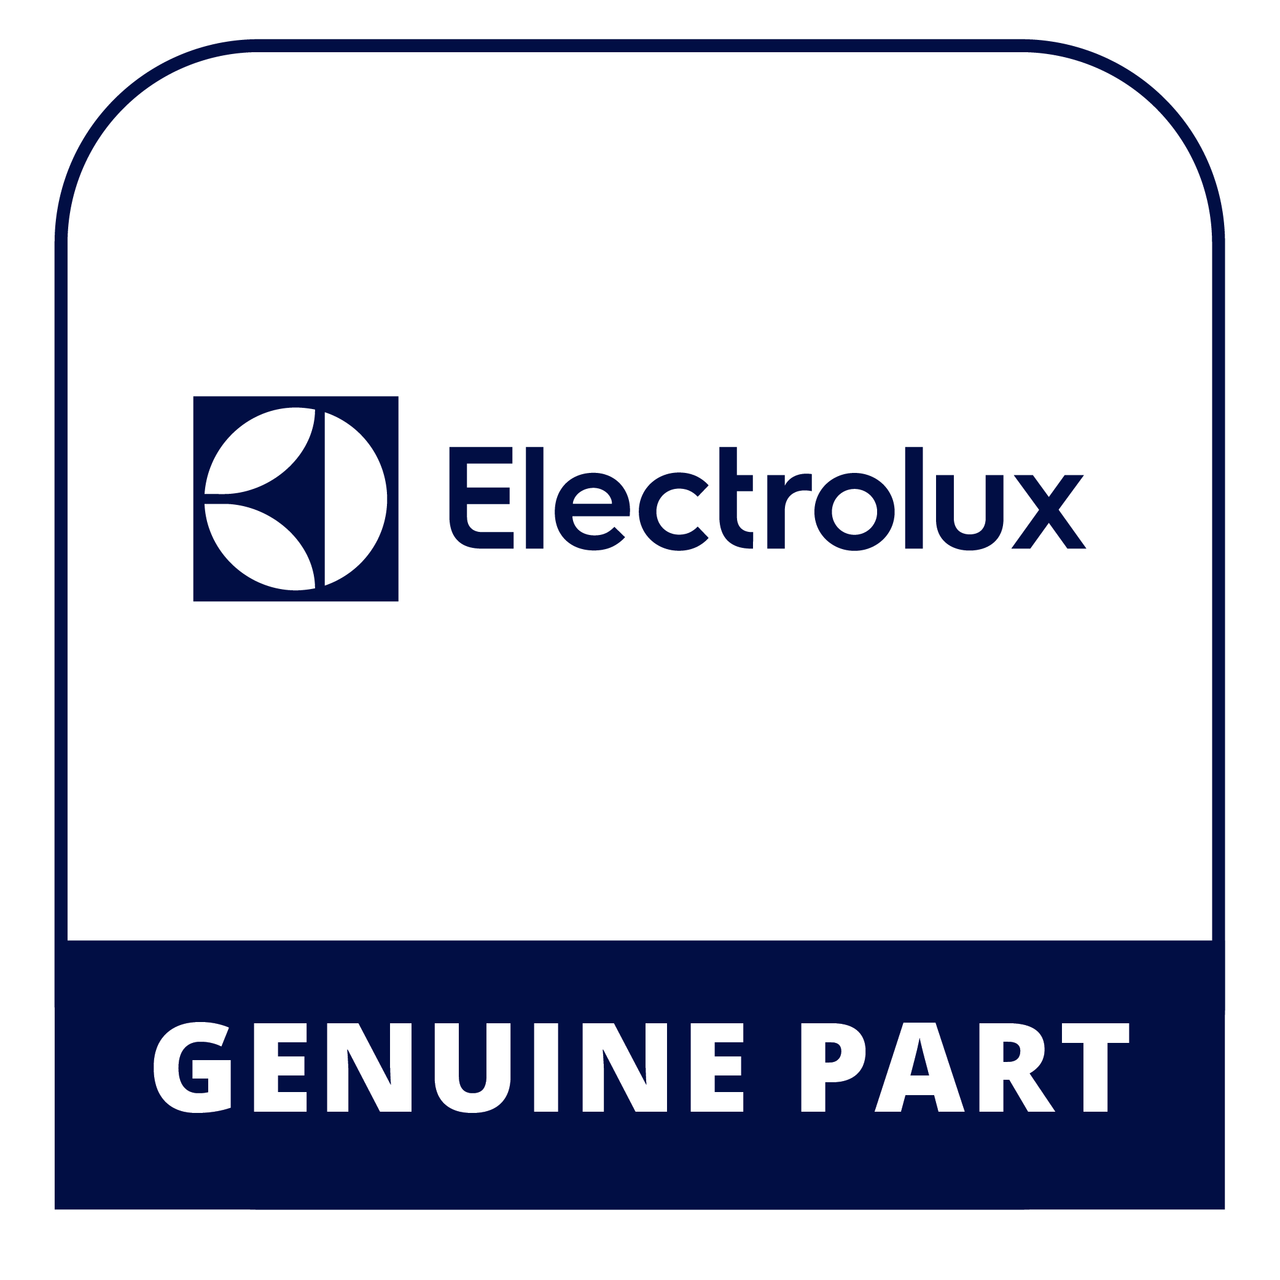 Frigidaire - Electrolux 316273003 #Vp#Dsp Maintop - Genuine Electrolux Part